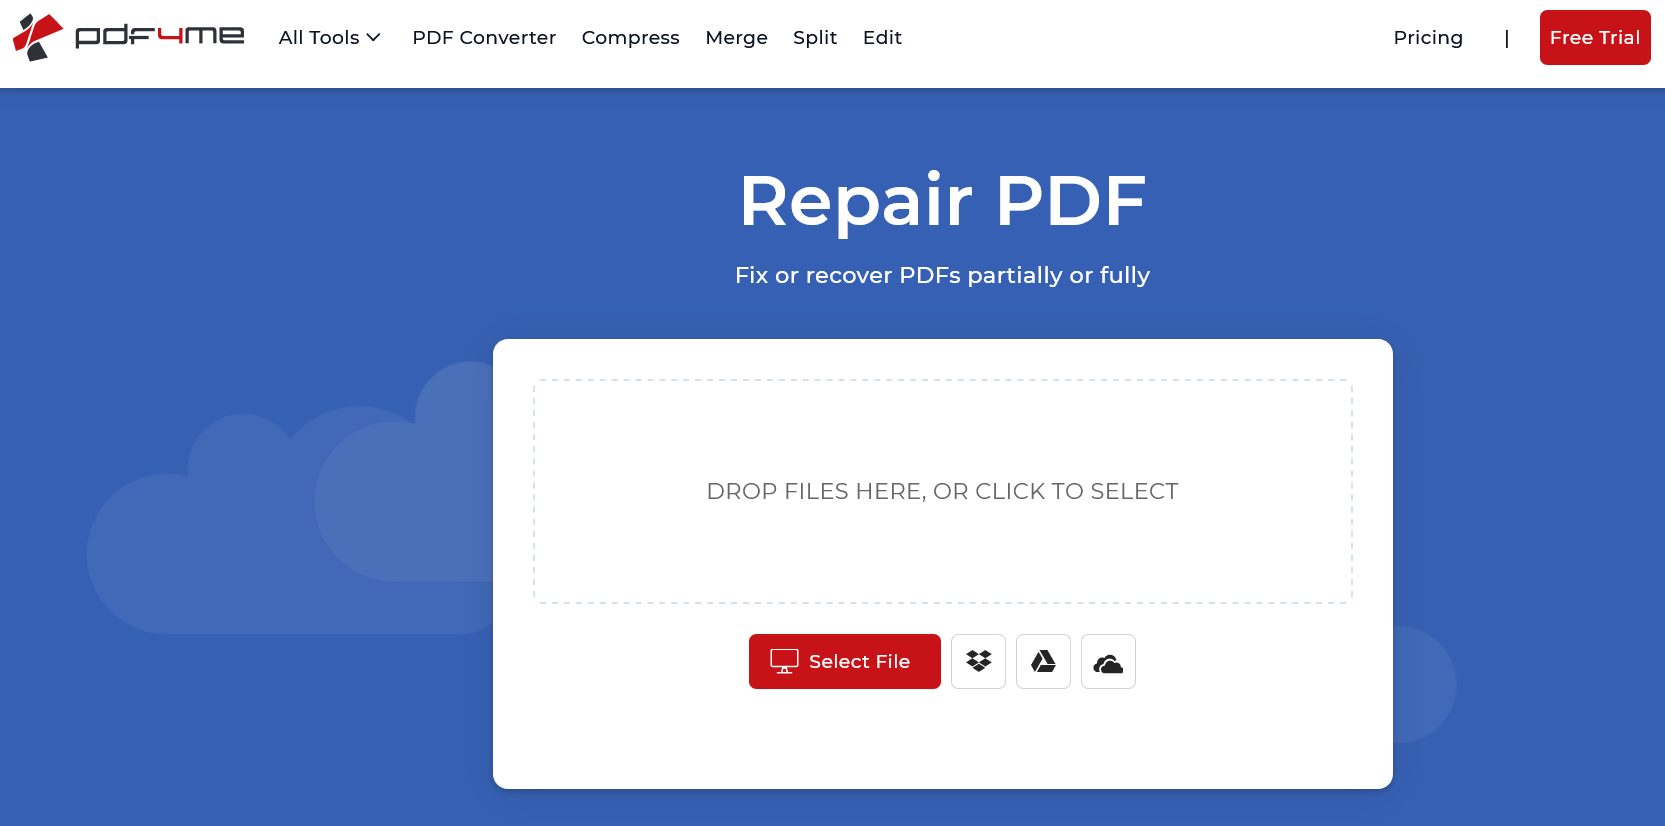 PDF4ME PDF Repair